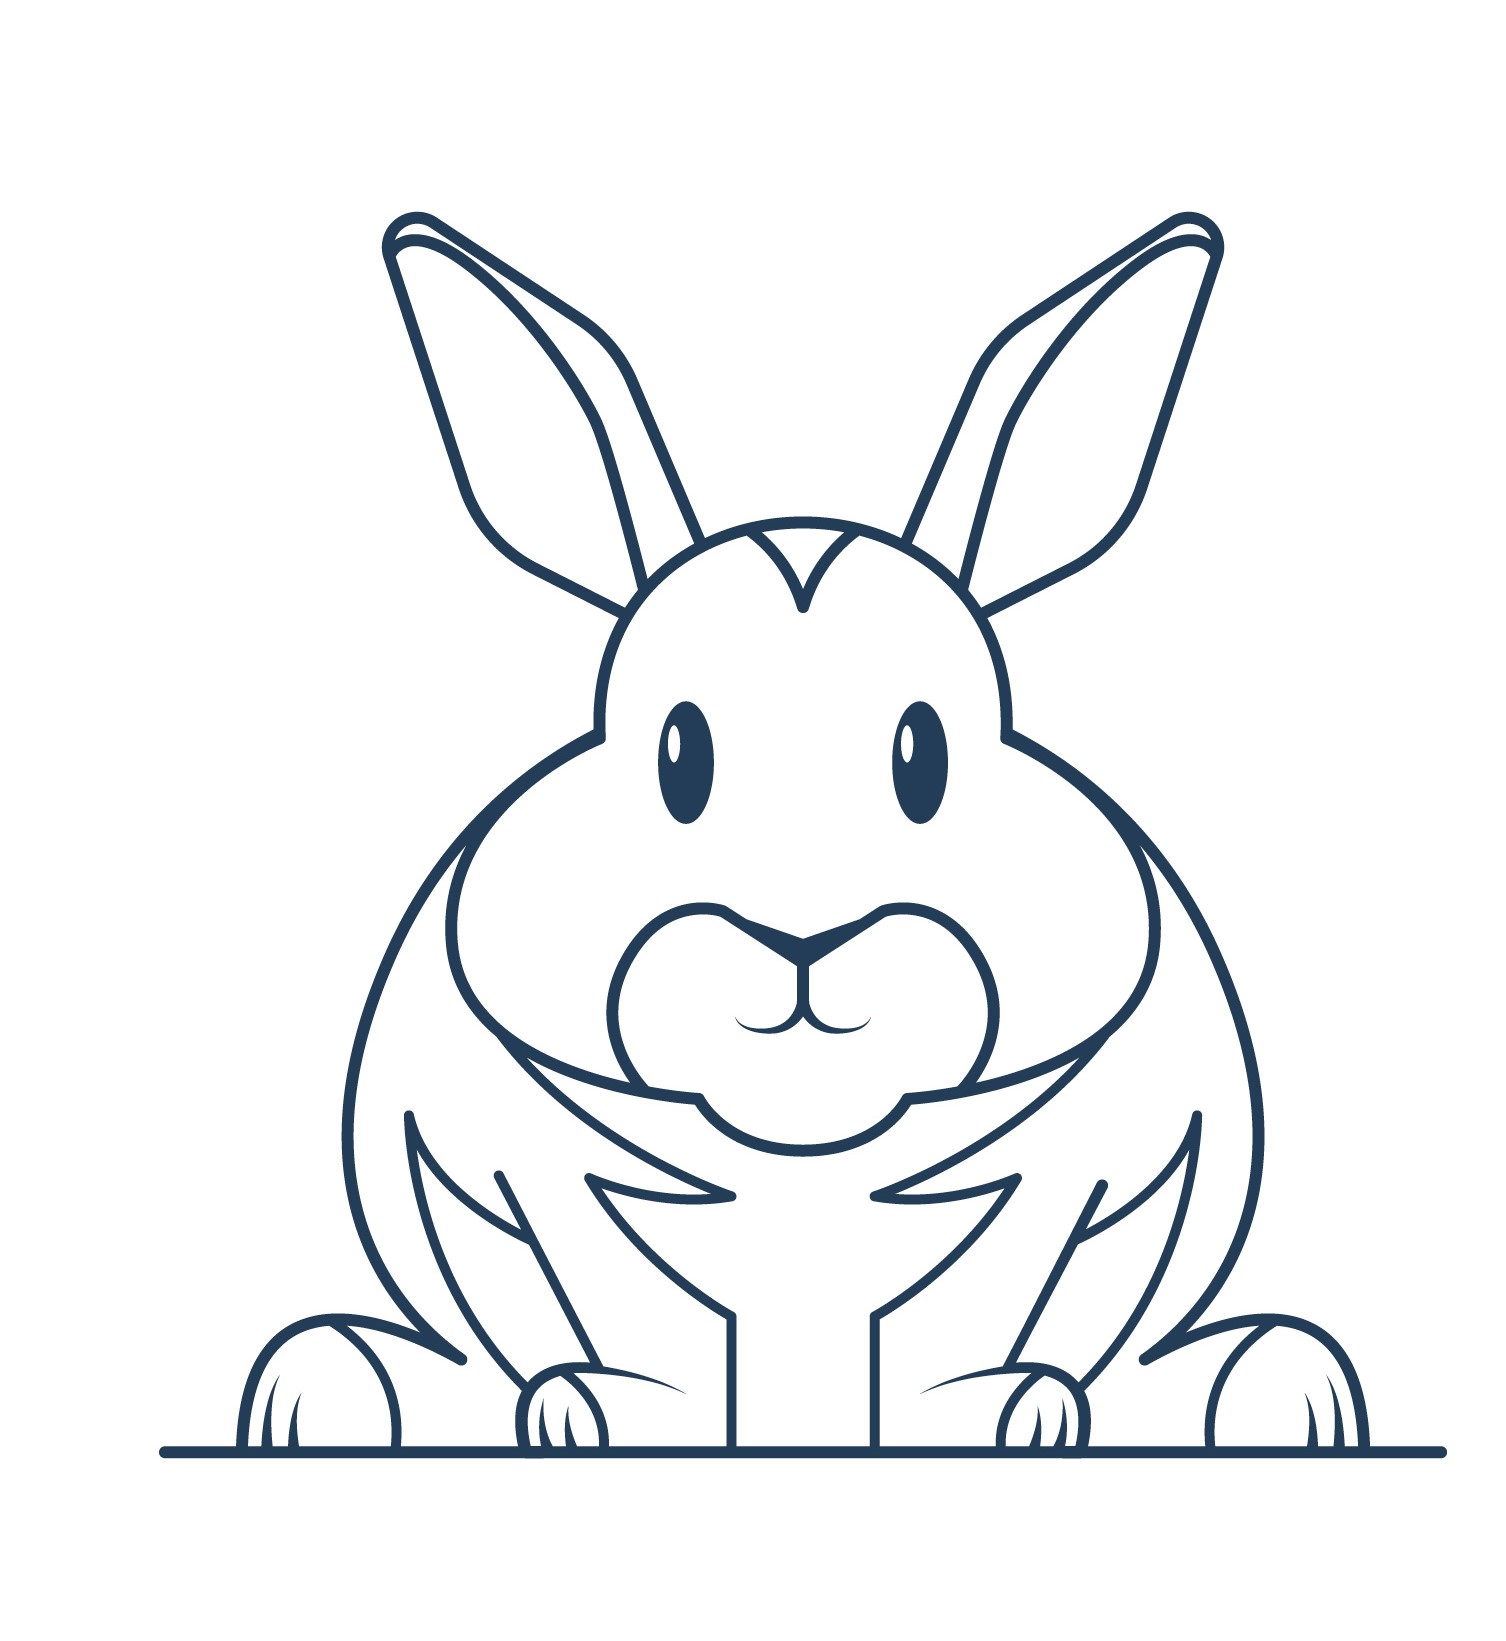 Раскраска забавный заяц с длинными ушами формата А4 в высоком качестве